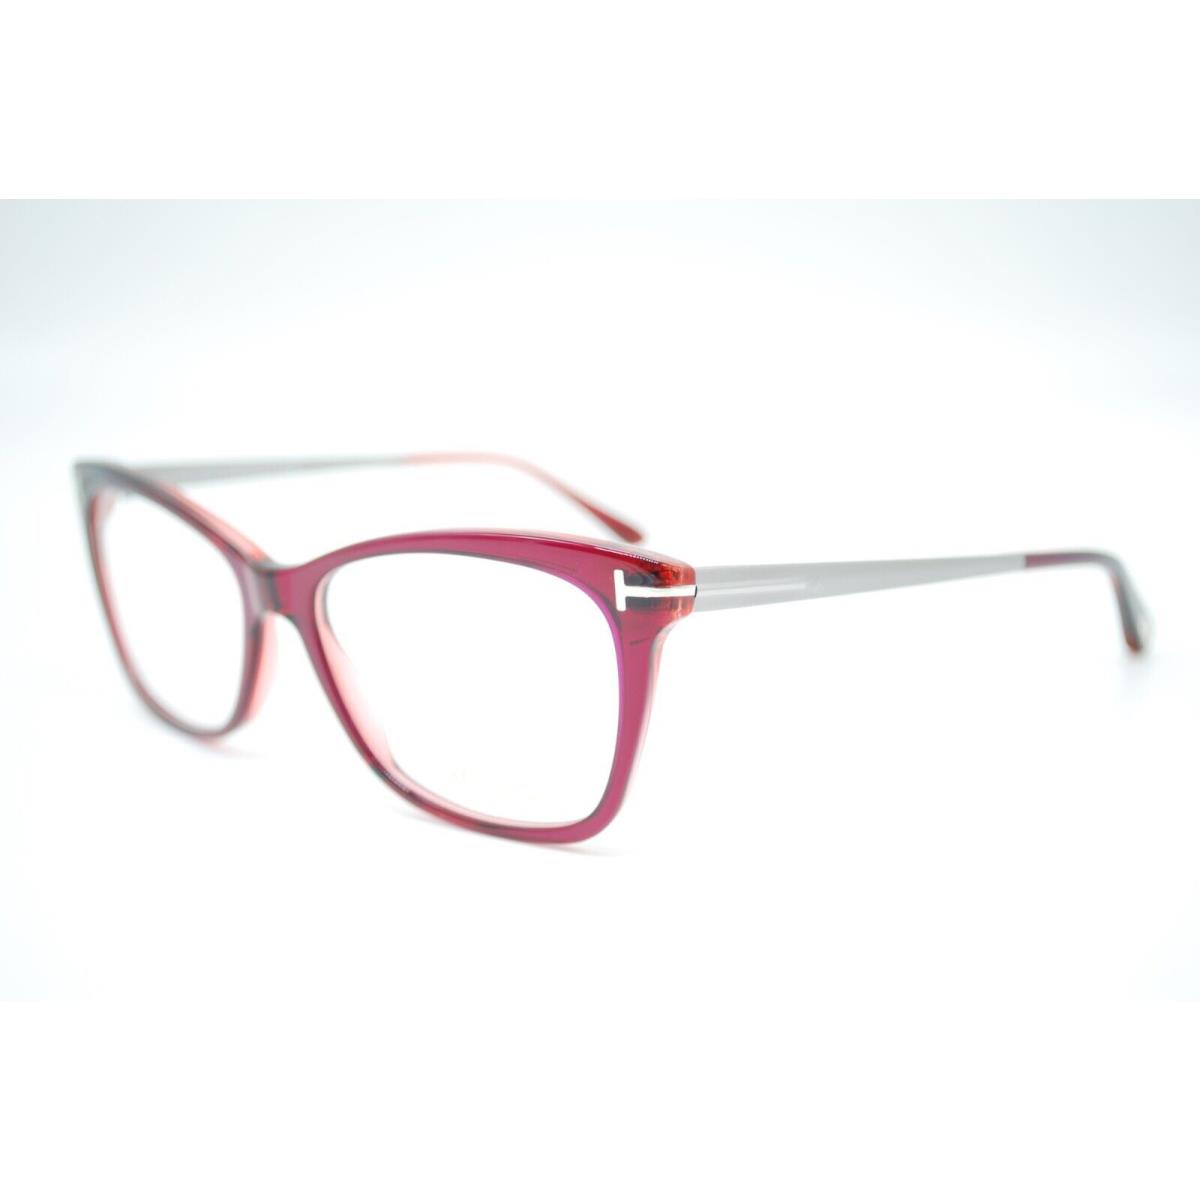 Tom Ford eyeglasses  - Red Frame 0